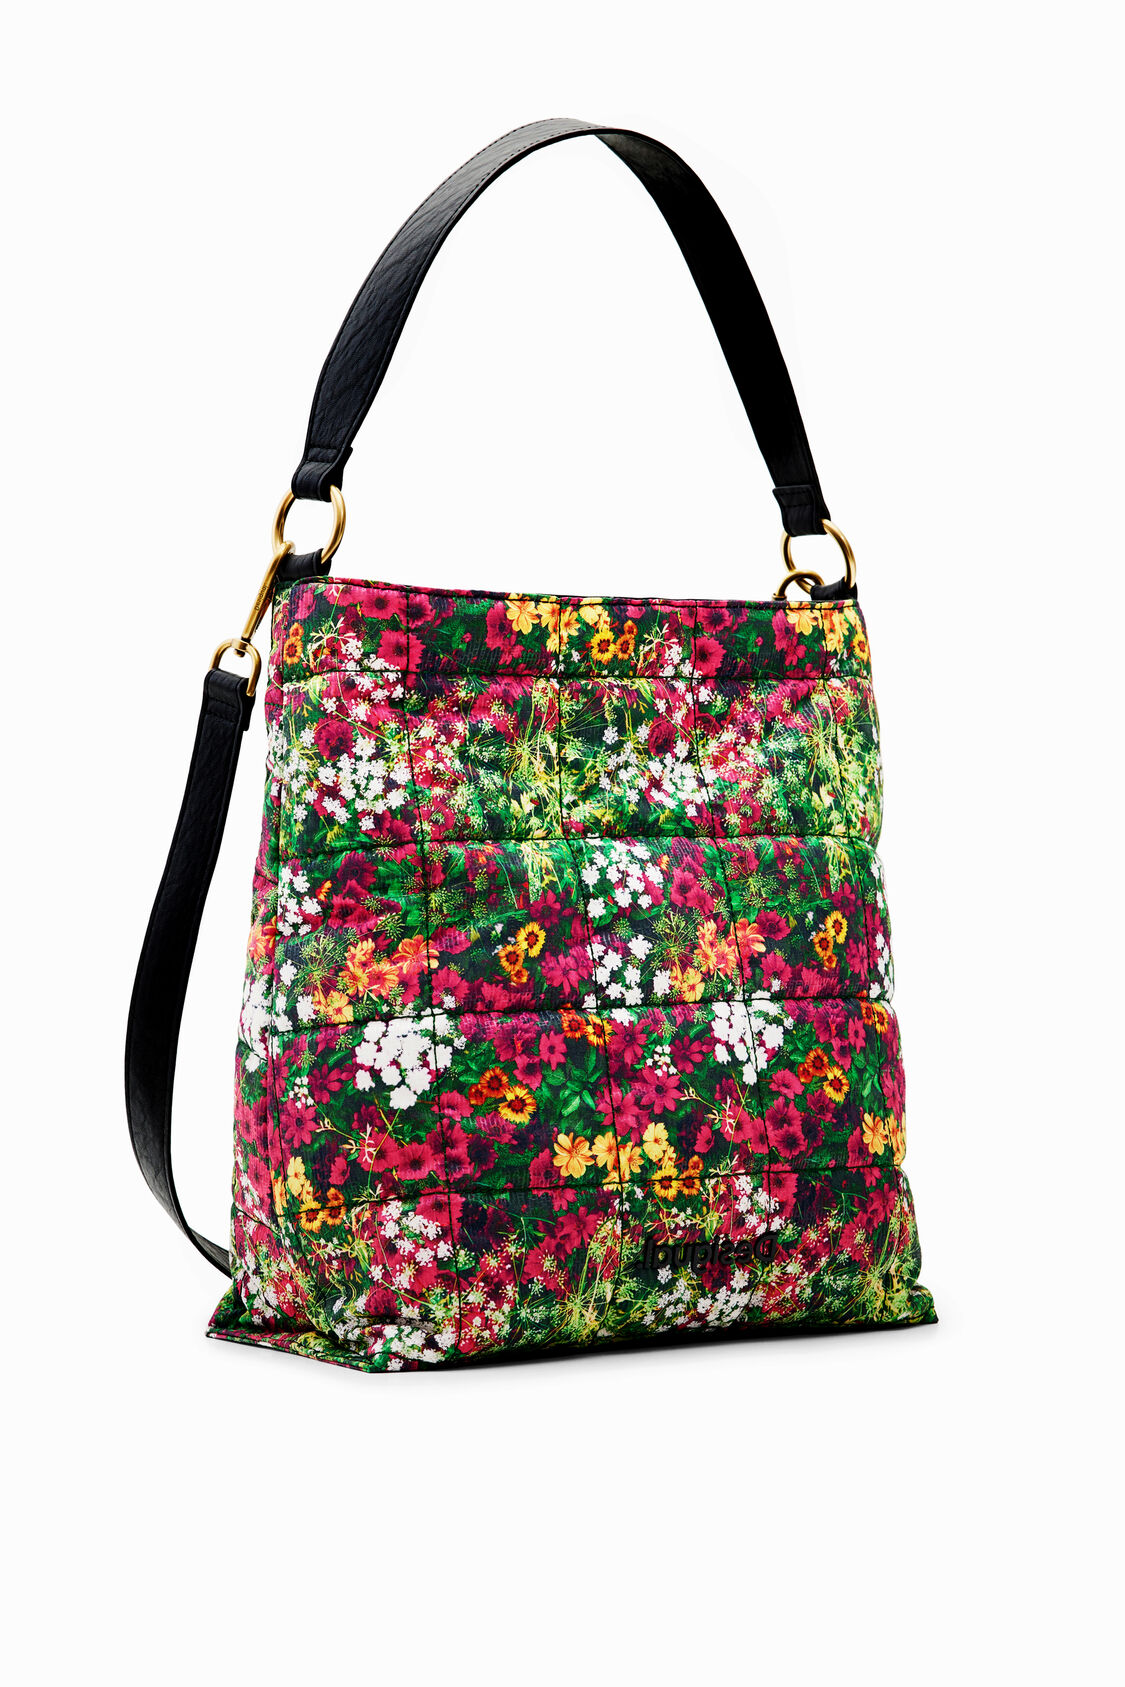 Bolso saco floral | Desigual.com